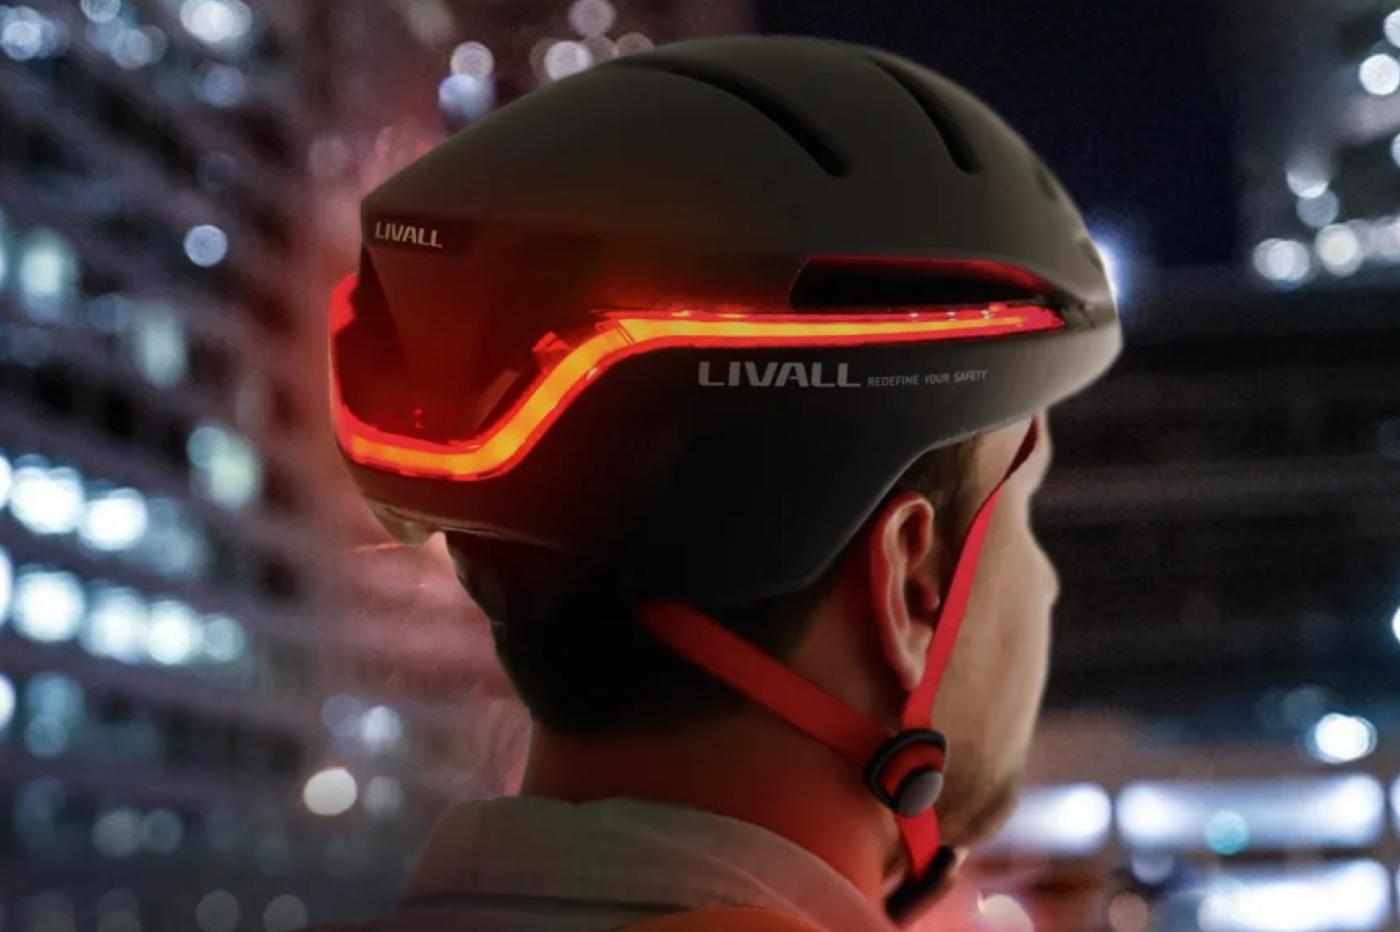 Livall présente un casque de vélo intelligent, avec phare panoramique et alertes SOS